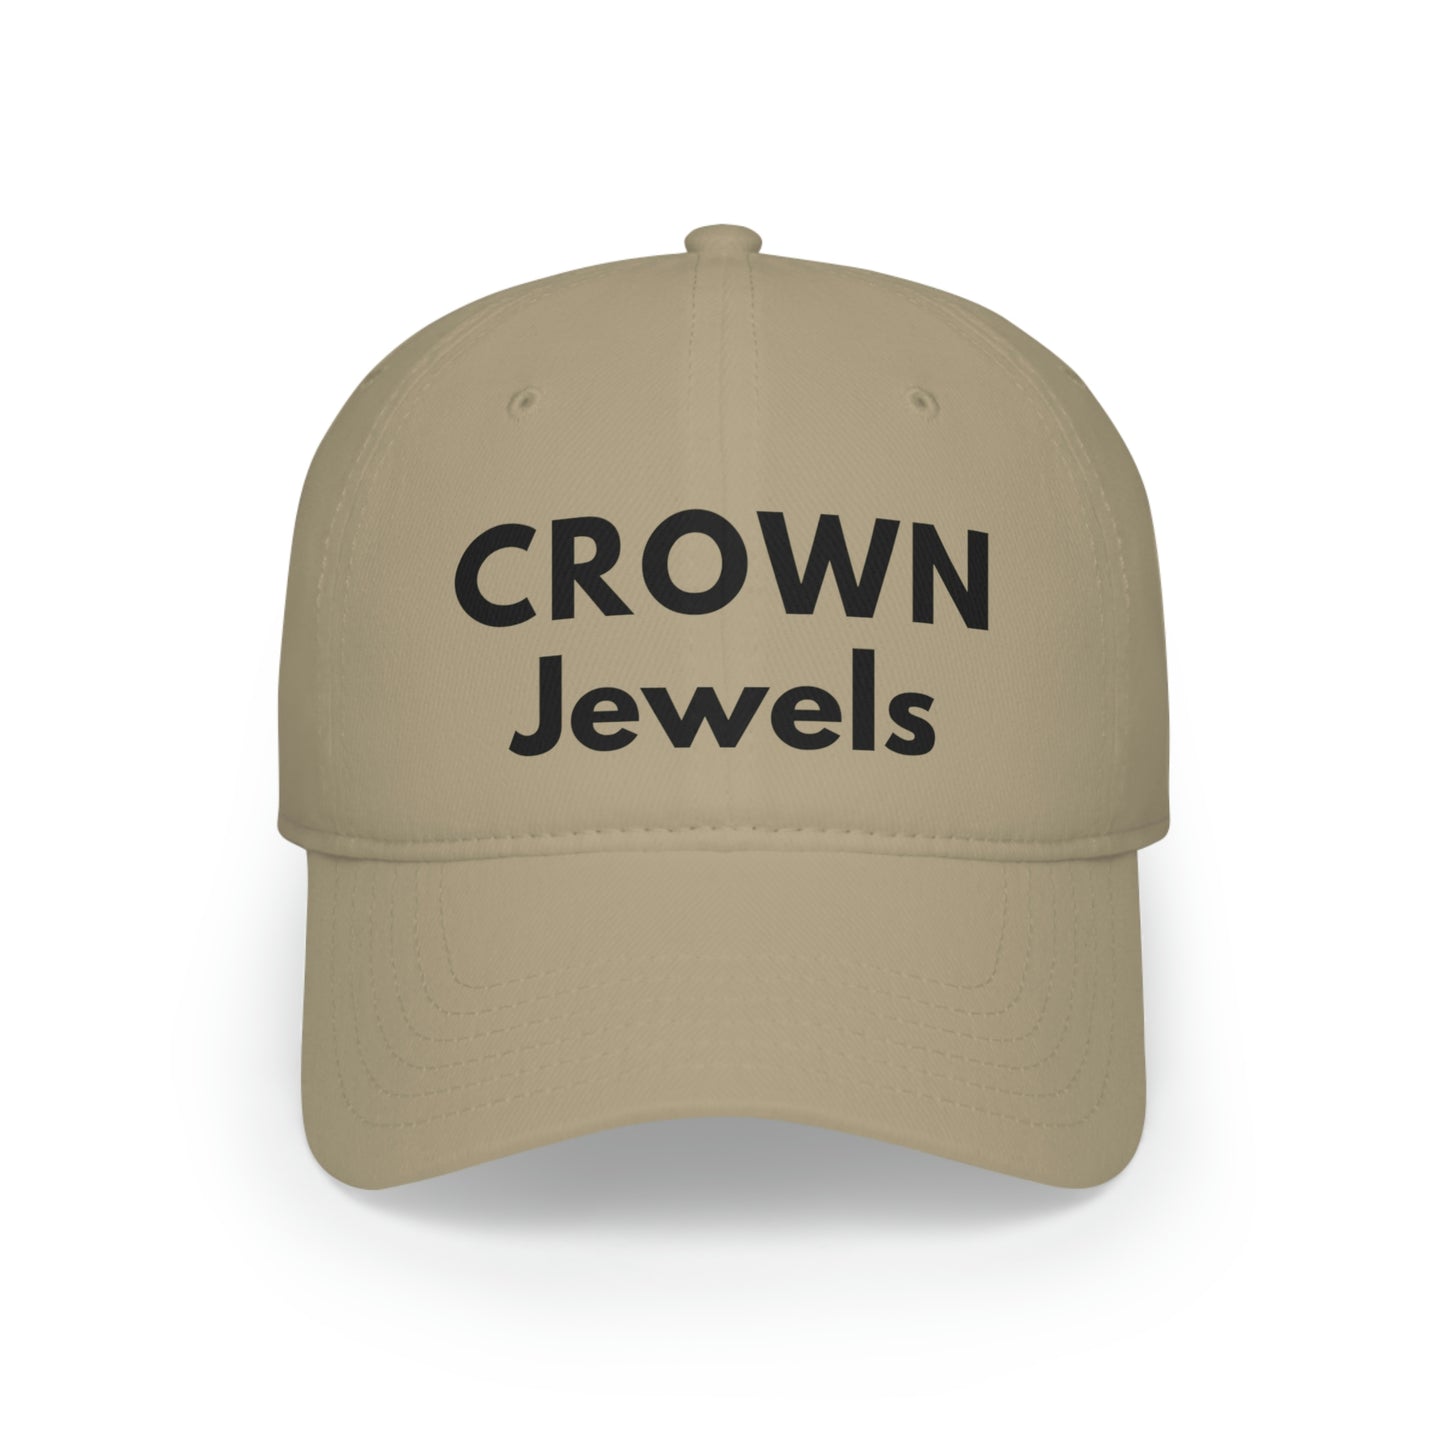 CROWN Jewels